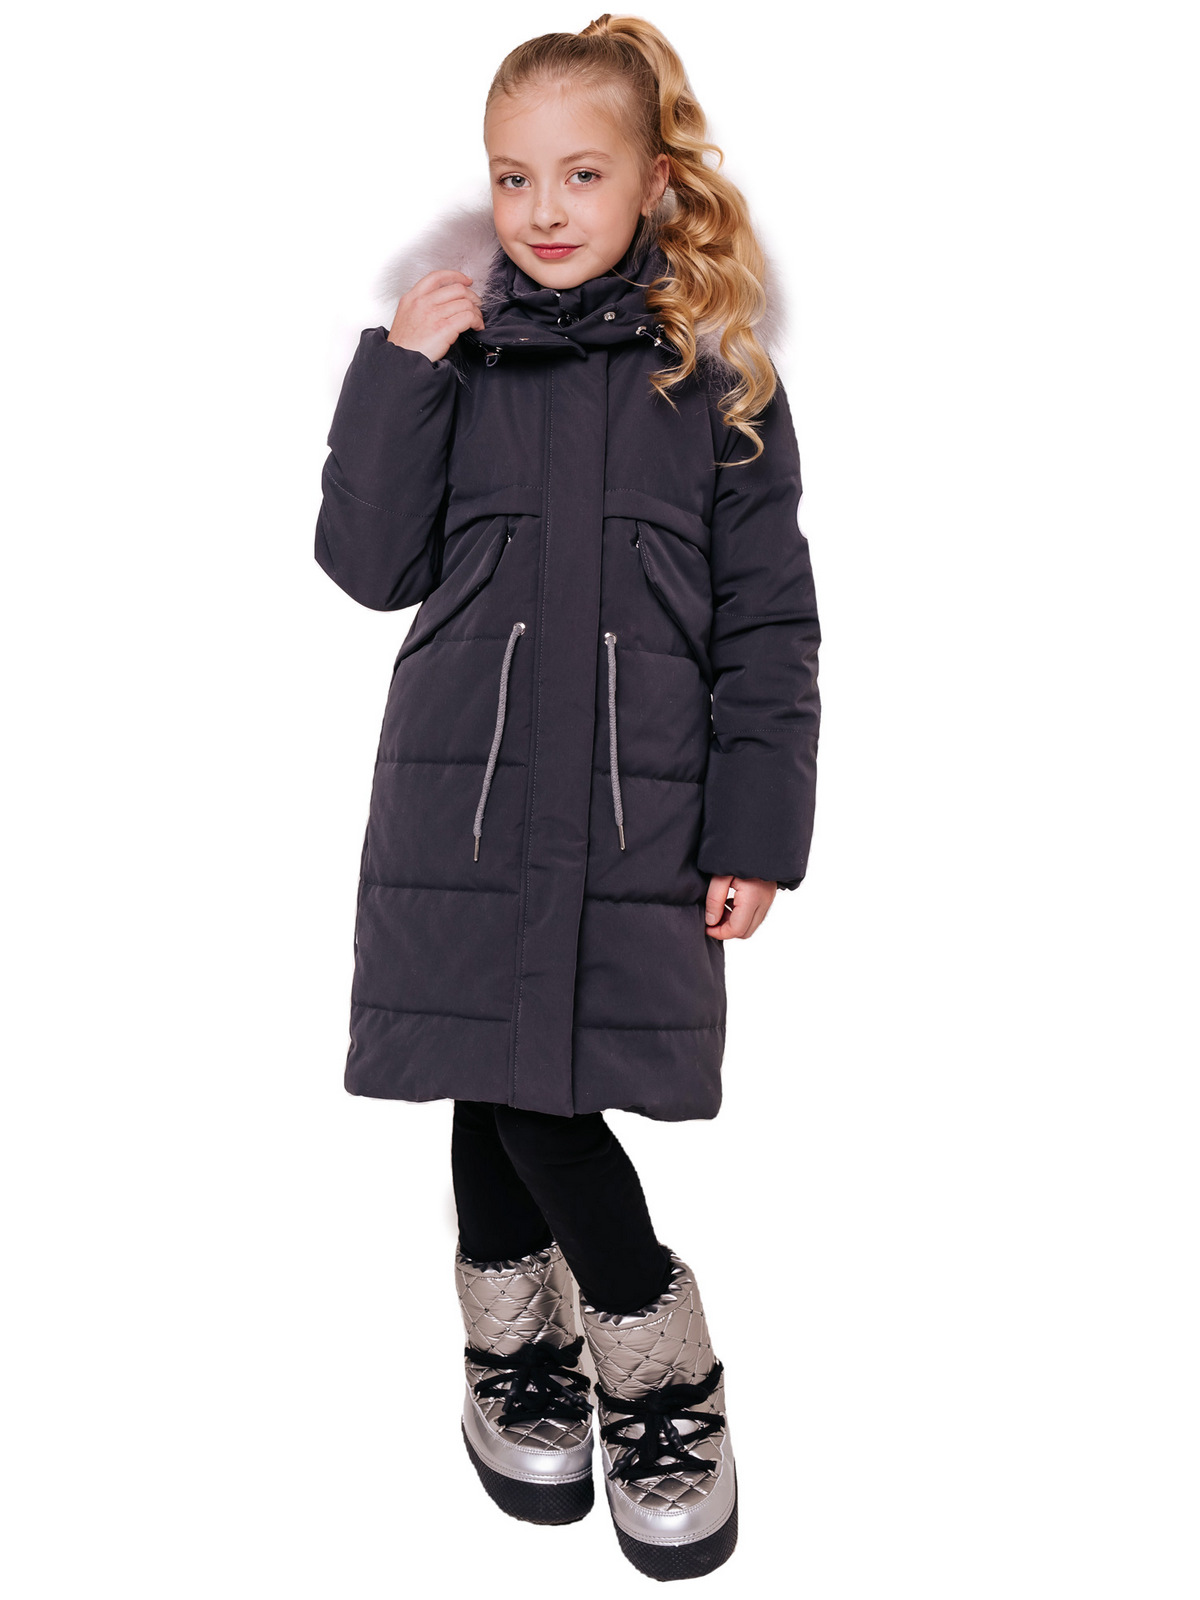 Куртки, парки для детей - купите в интернет-магазине Батик24